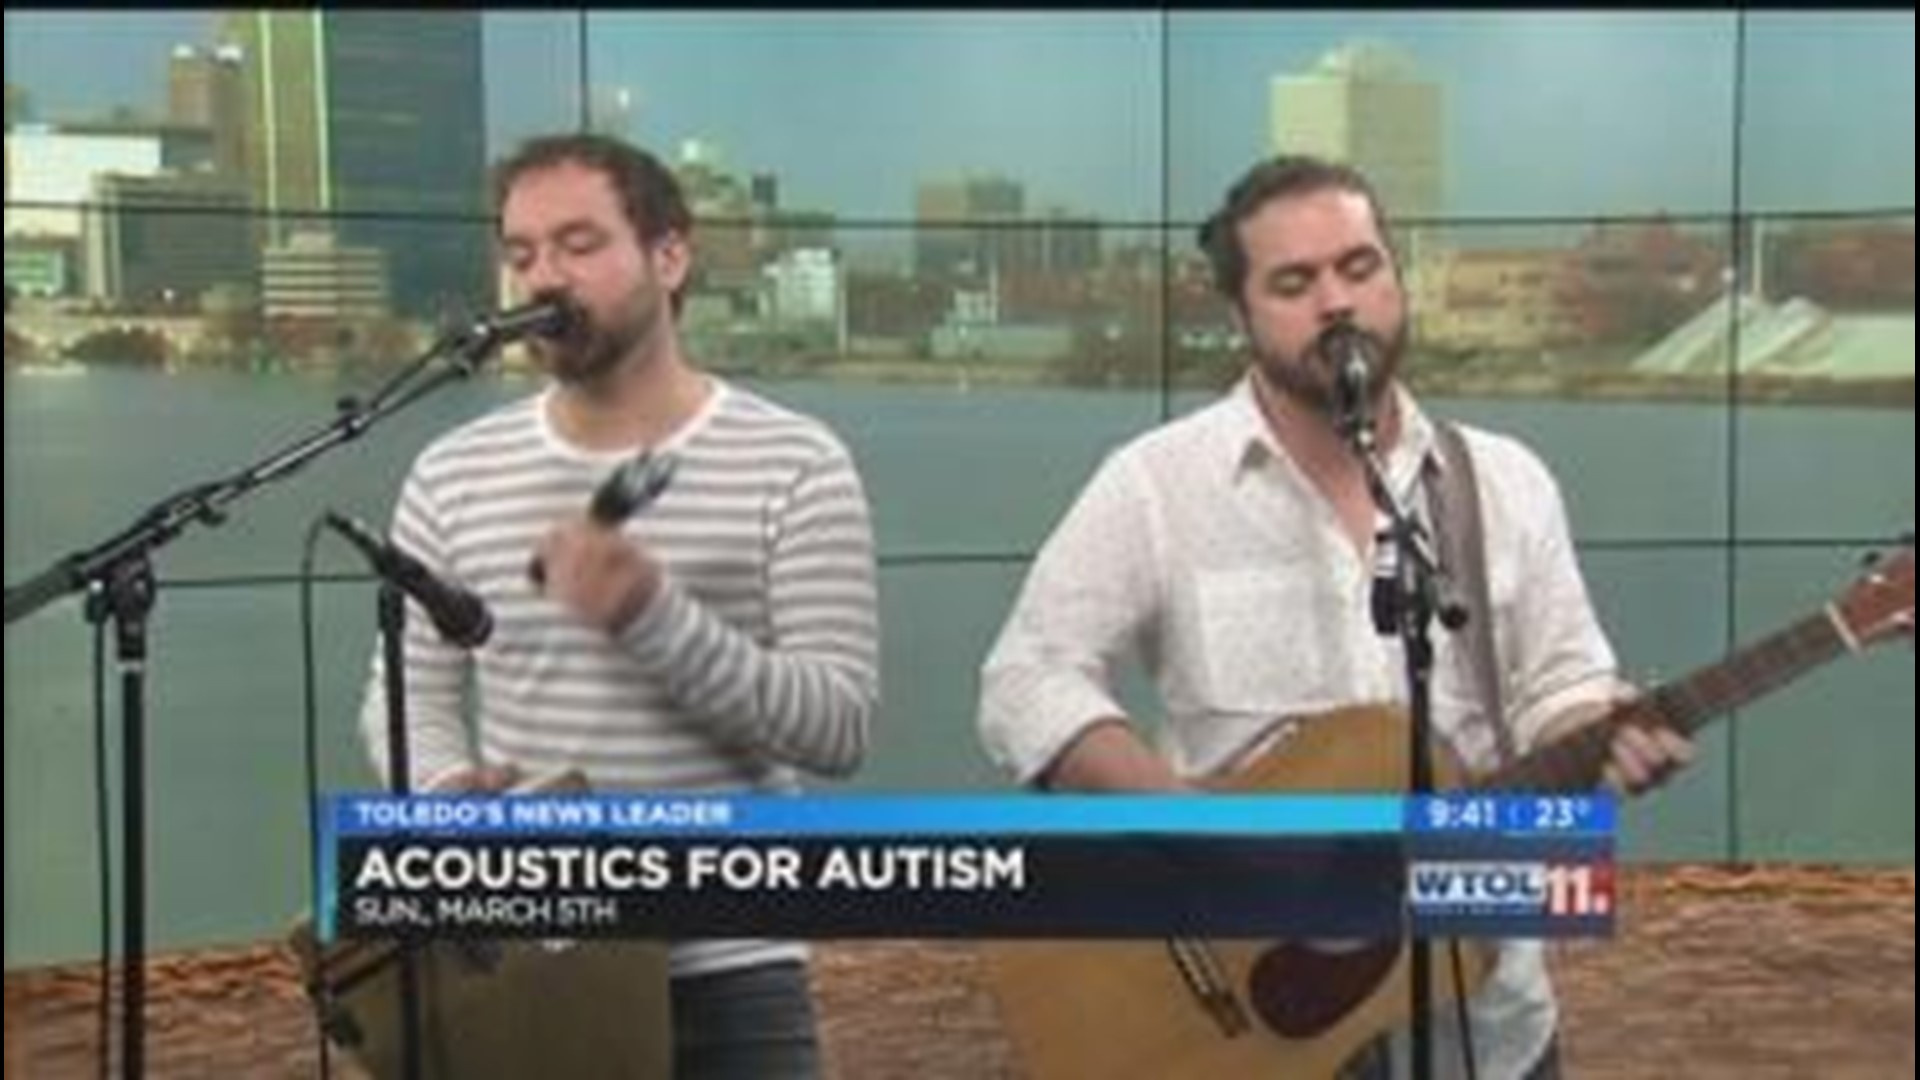 'Captain Sweet Shoes' performs, talks about Acoustics for Autism